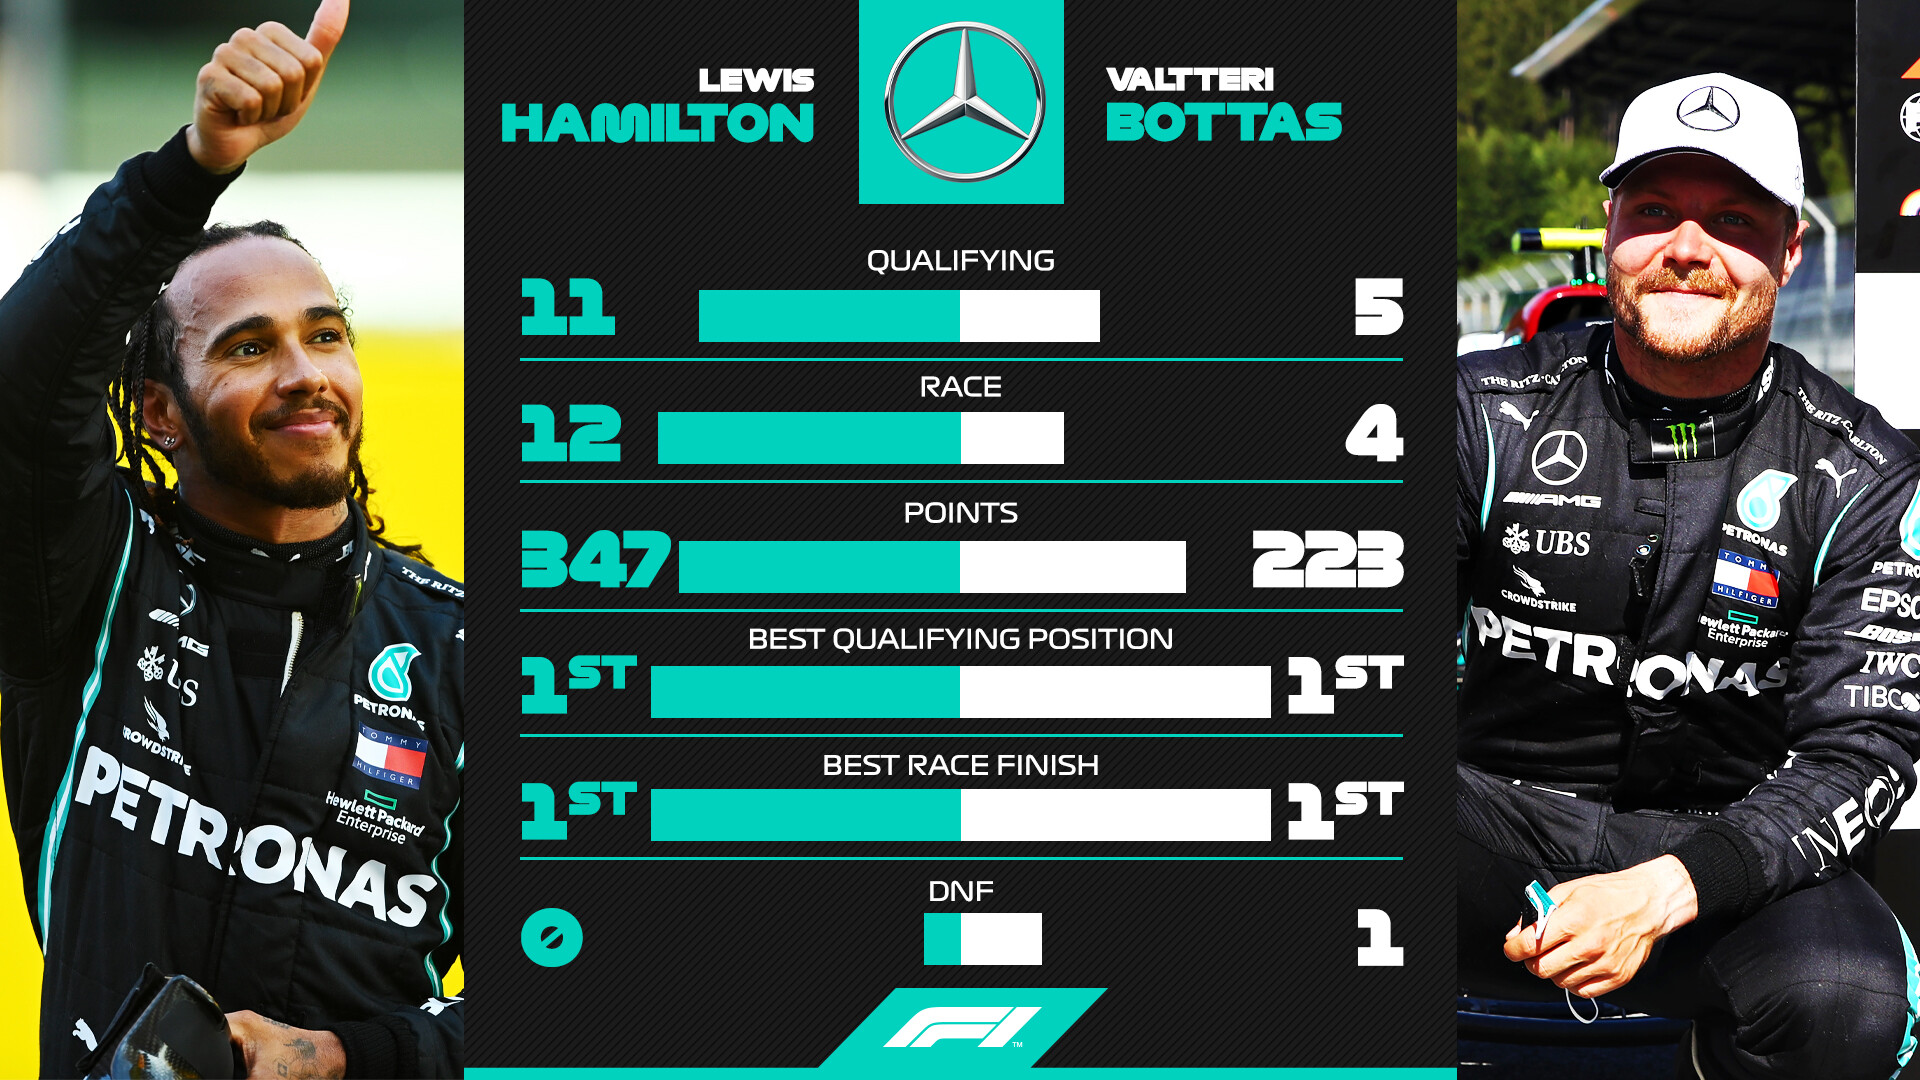 ルイス ハミルトン Vs ヴァルテリ ボタス 年f1成績比較 F1通信